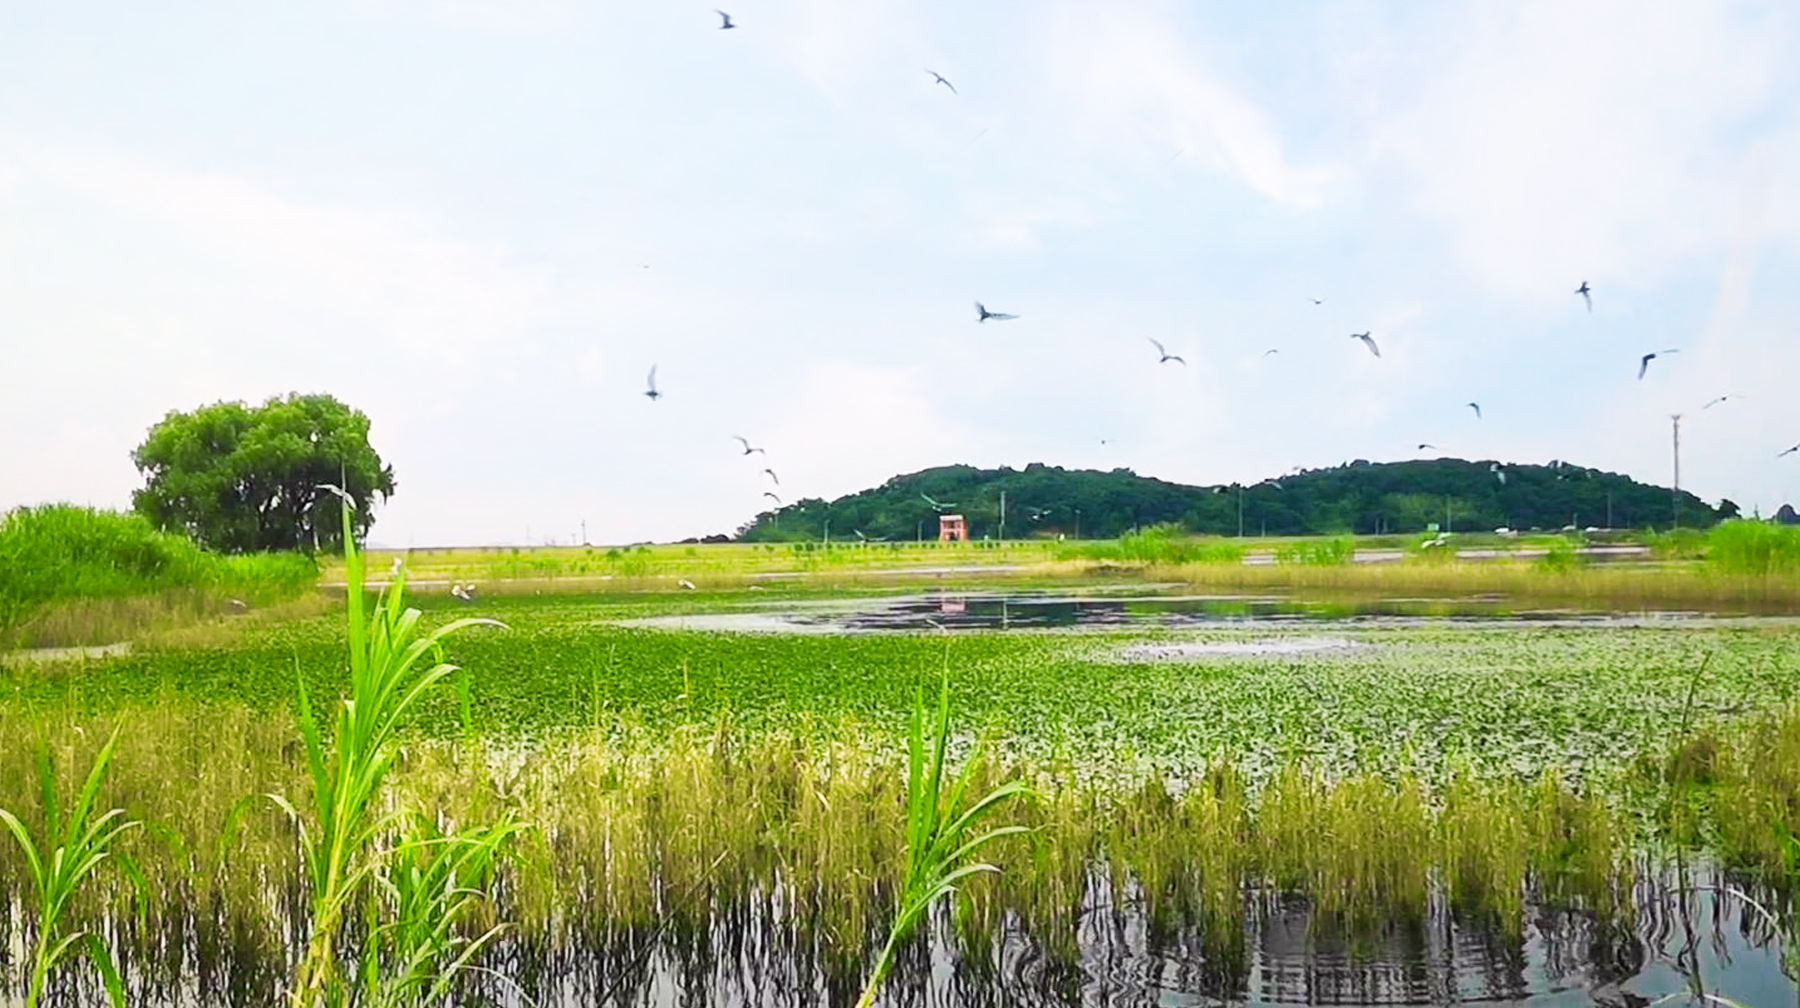 原创武汉郊区有座鱼米之乡水上游船赏湿地全景芦苇荷塘美得像画卷